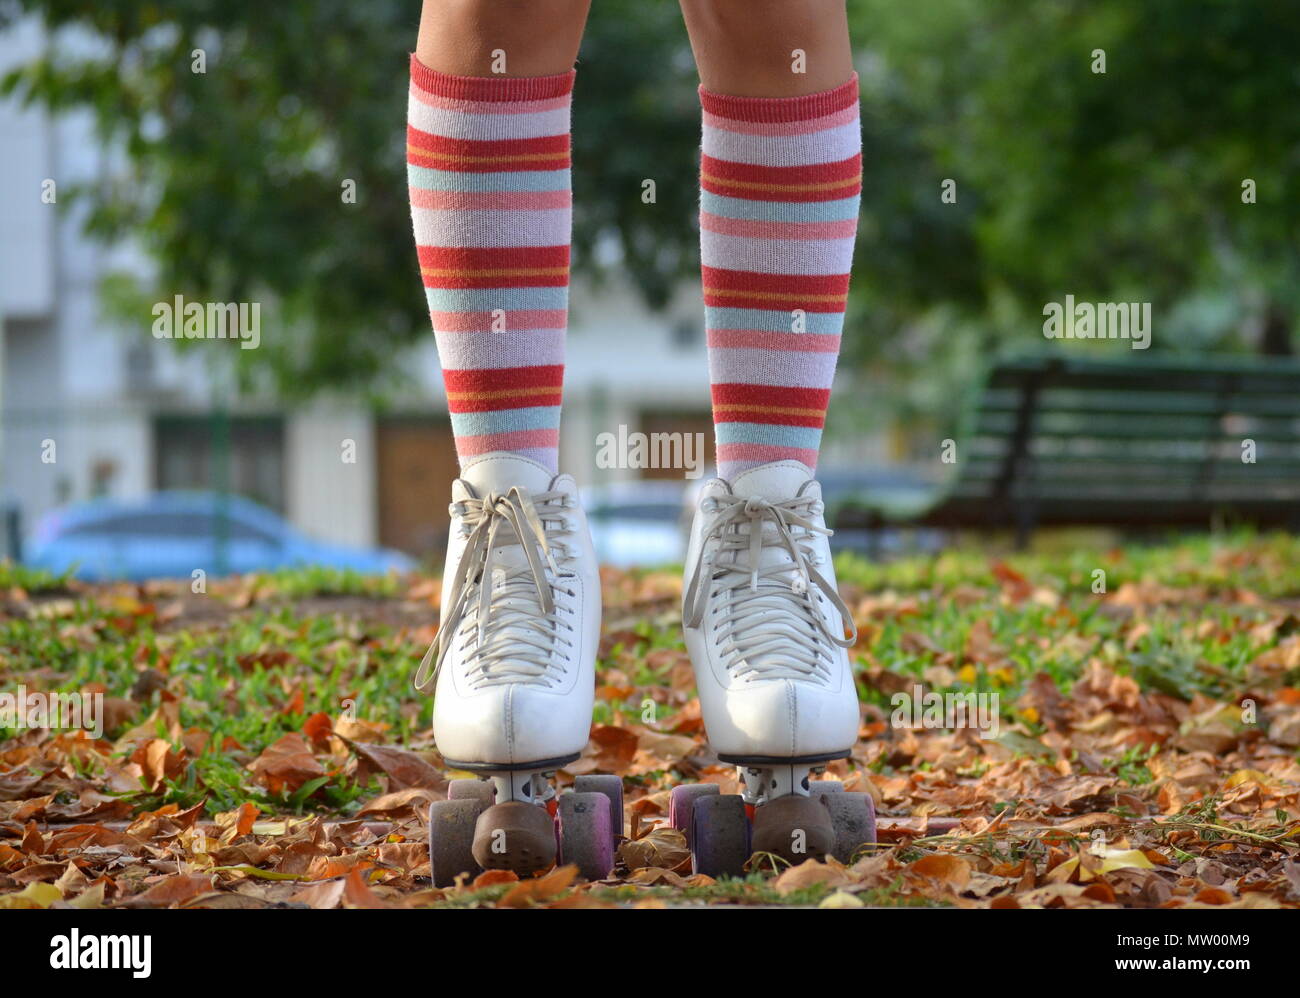 Close-up de una niña de la piernas vistiendo patines y calcetines